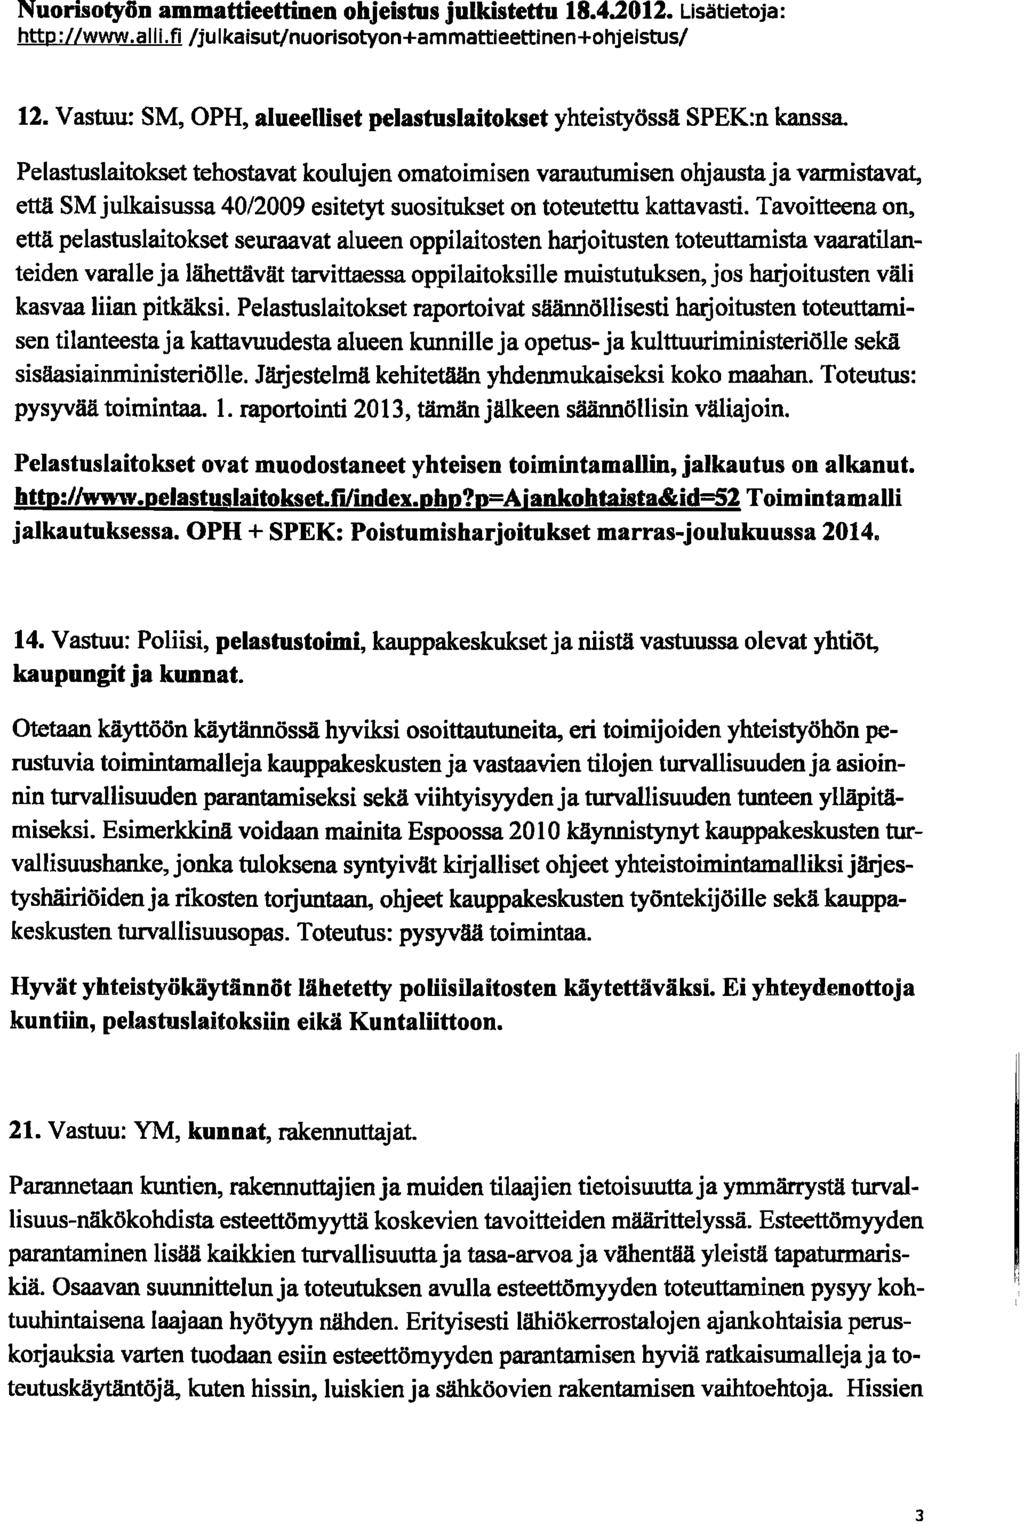 Nuorisotyfin ammattieettinen ohjeistus julkistettu 18.4.2012. Lisätietoja: http://www.alli.fi/julkaisut/nuorisotyon+ammattieettinen+ohjelstus/ 12.